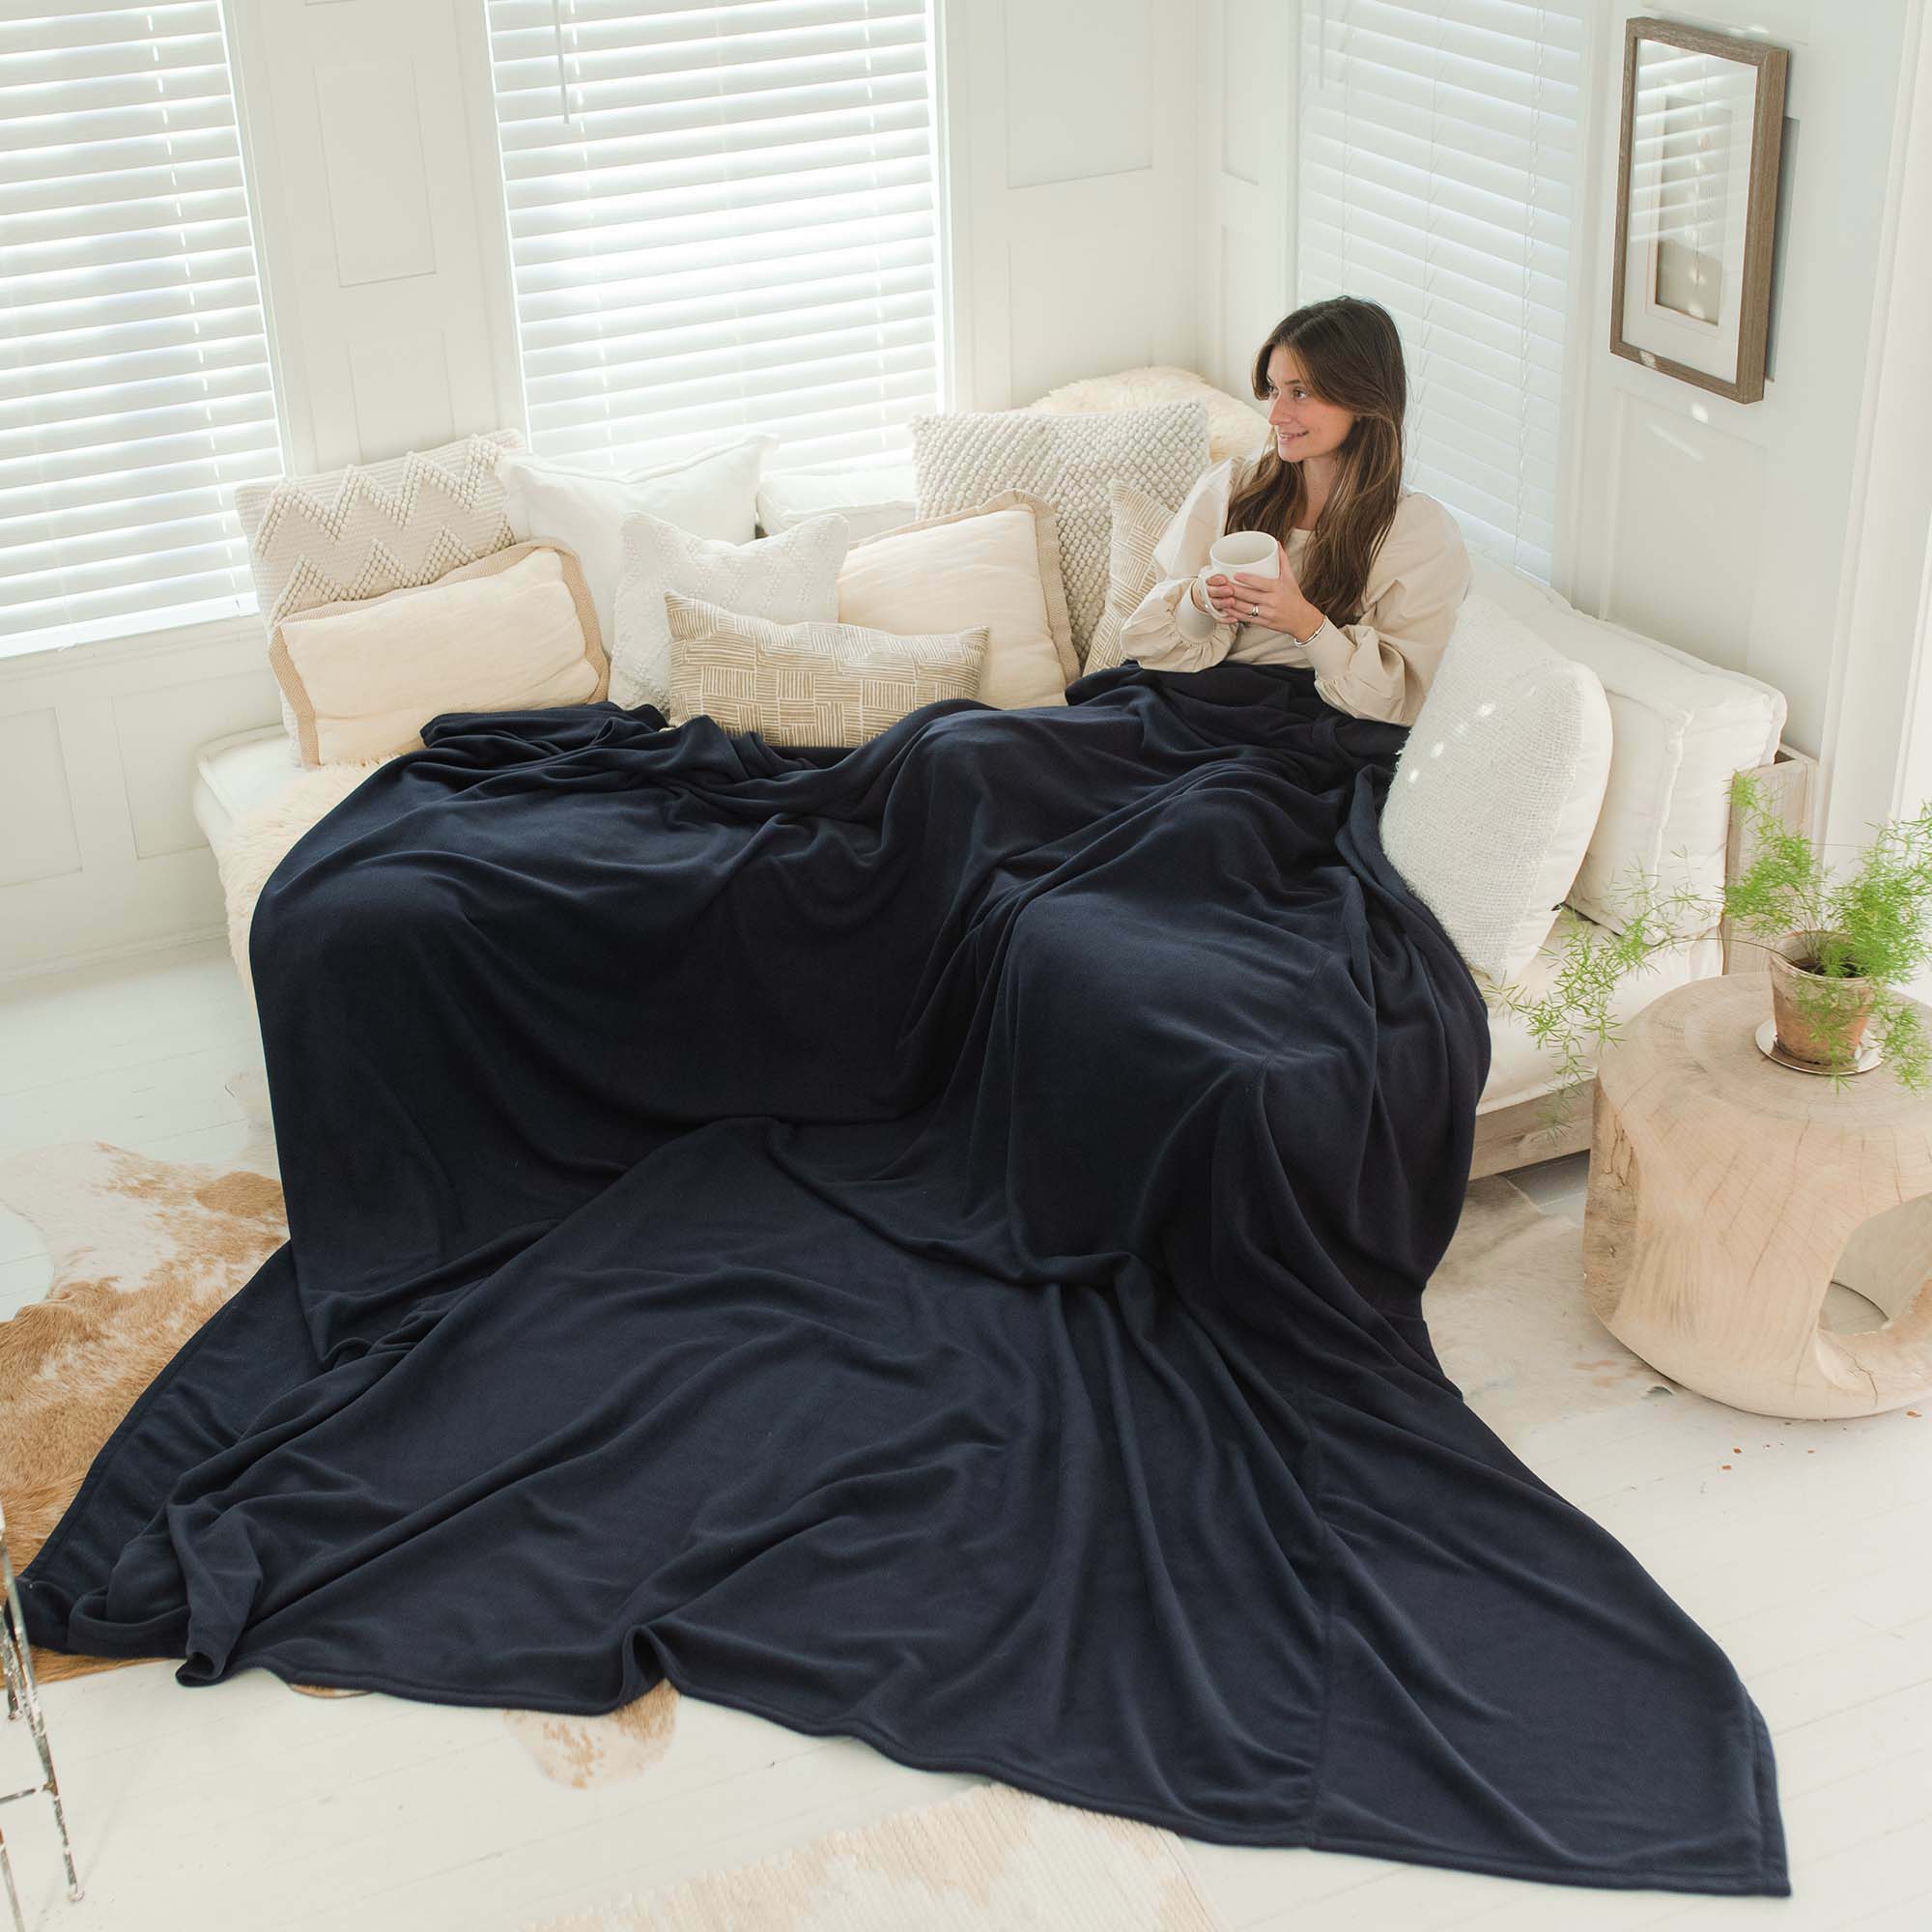 The Best Fleece Blankets - Custom Size Peaceful Touch Fleece Blankets - American Blanket Company